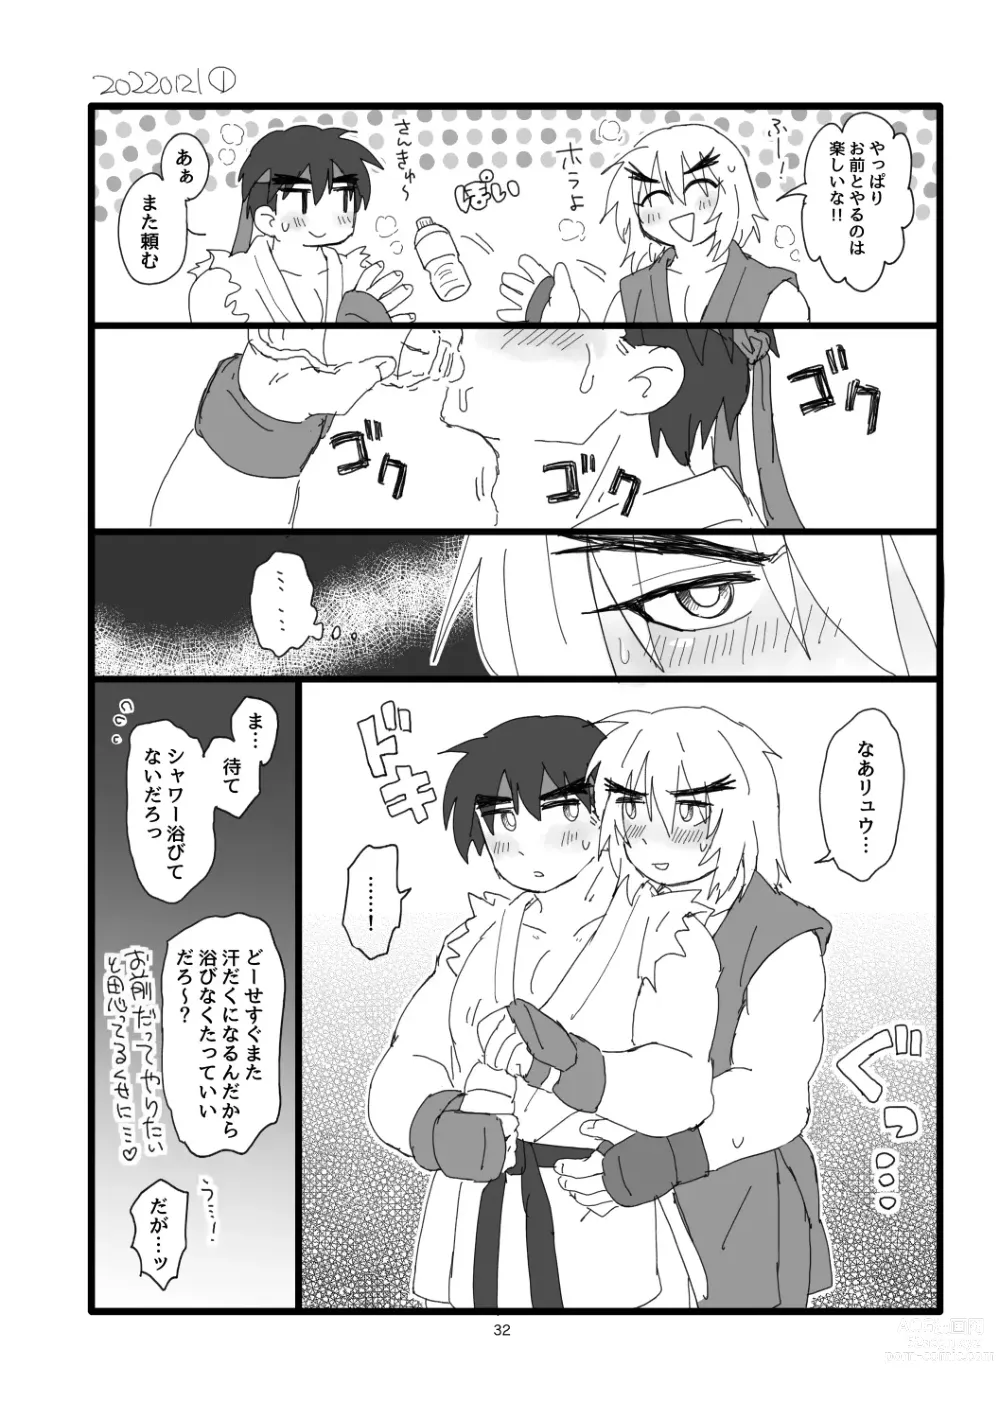 Page 31 of doujinshi Kobushi Kiss